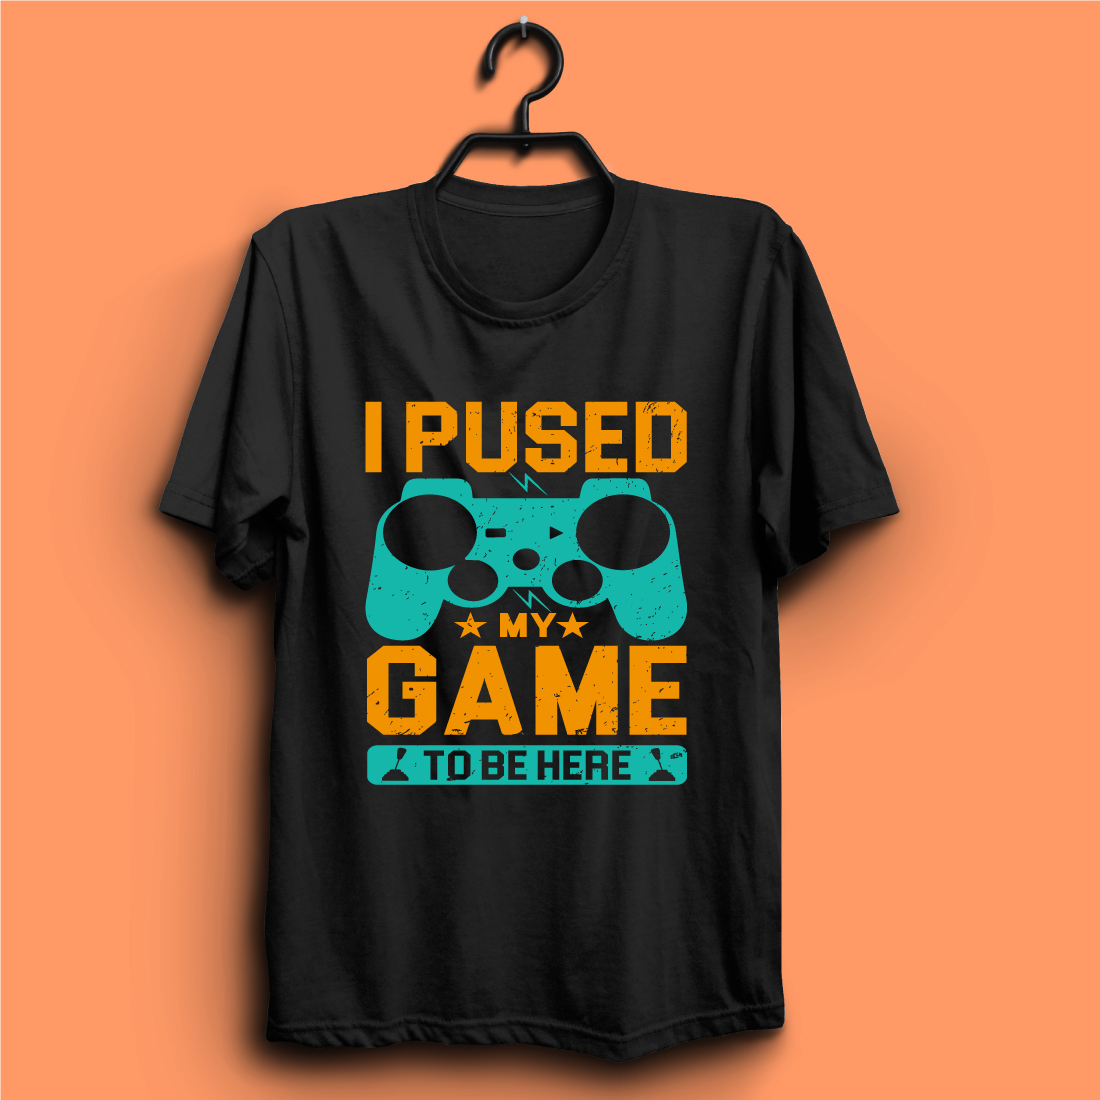 subtraktion i tilfælde af storhedsvanvid Gaming T-shirt Design Bundle - MasterBundles